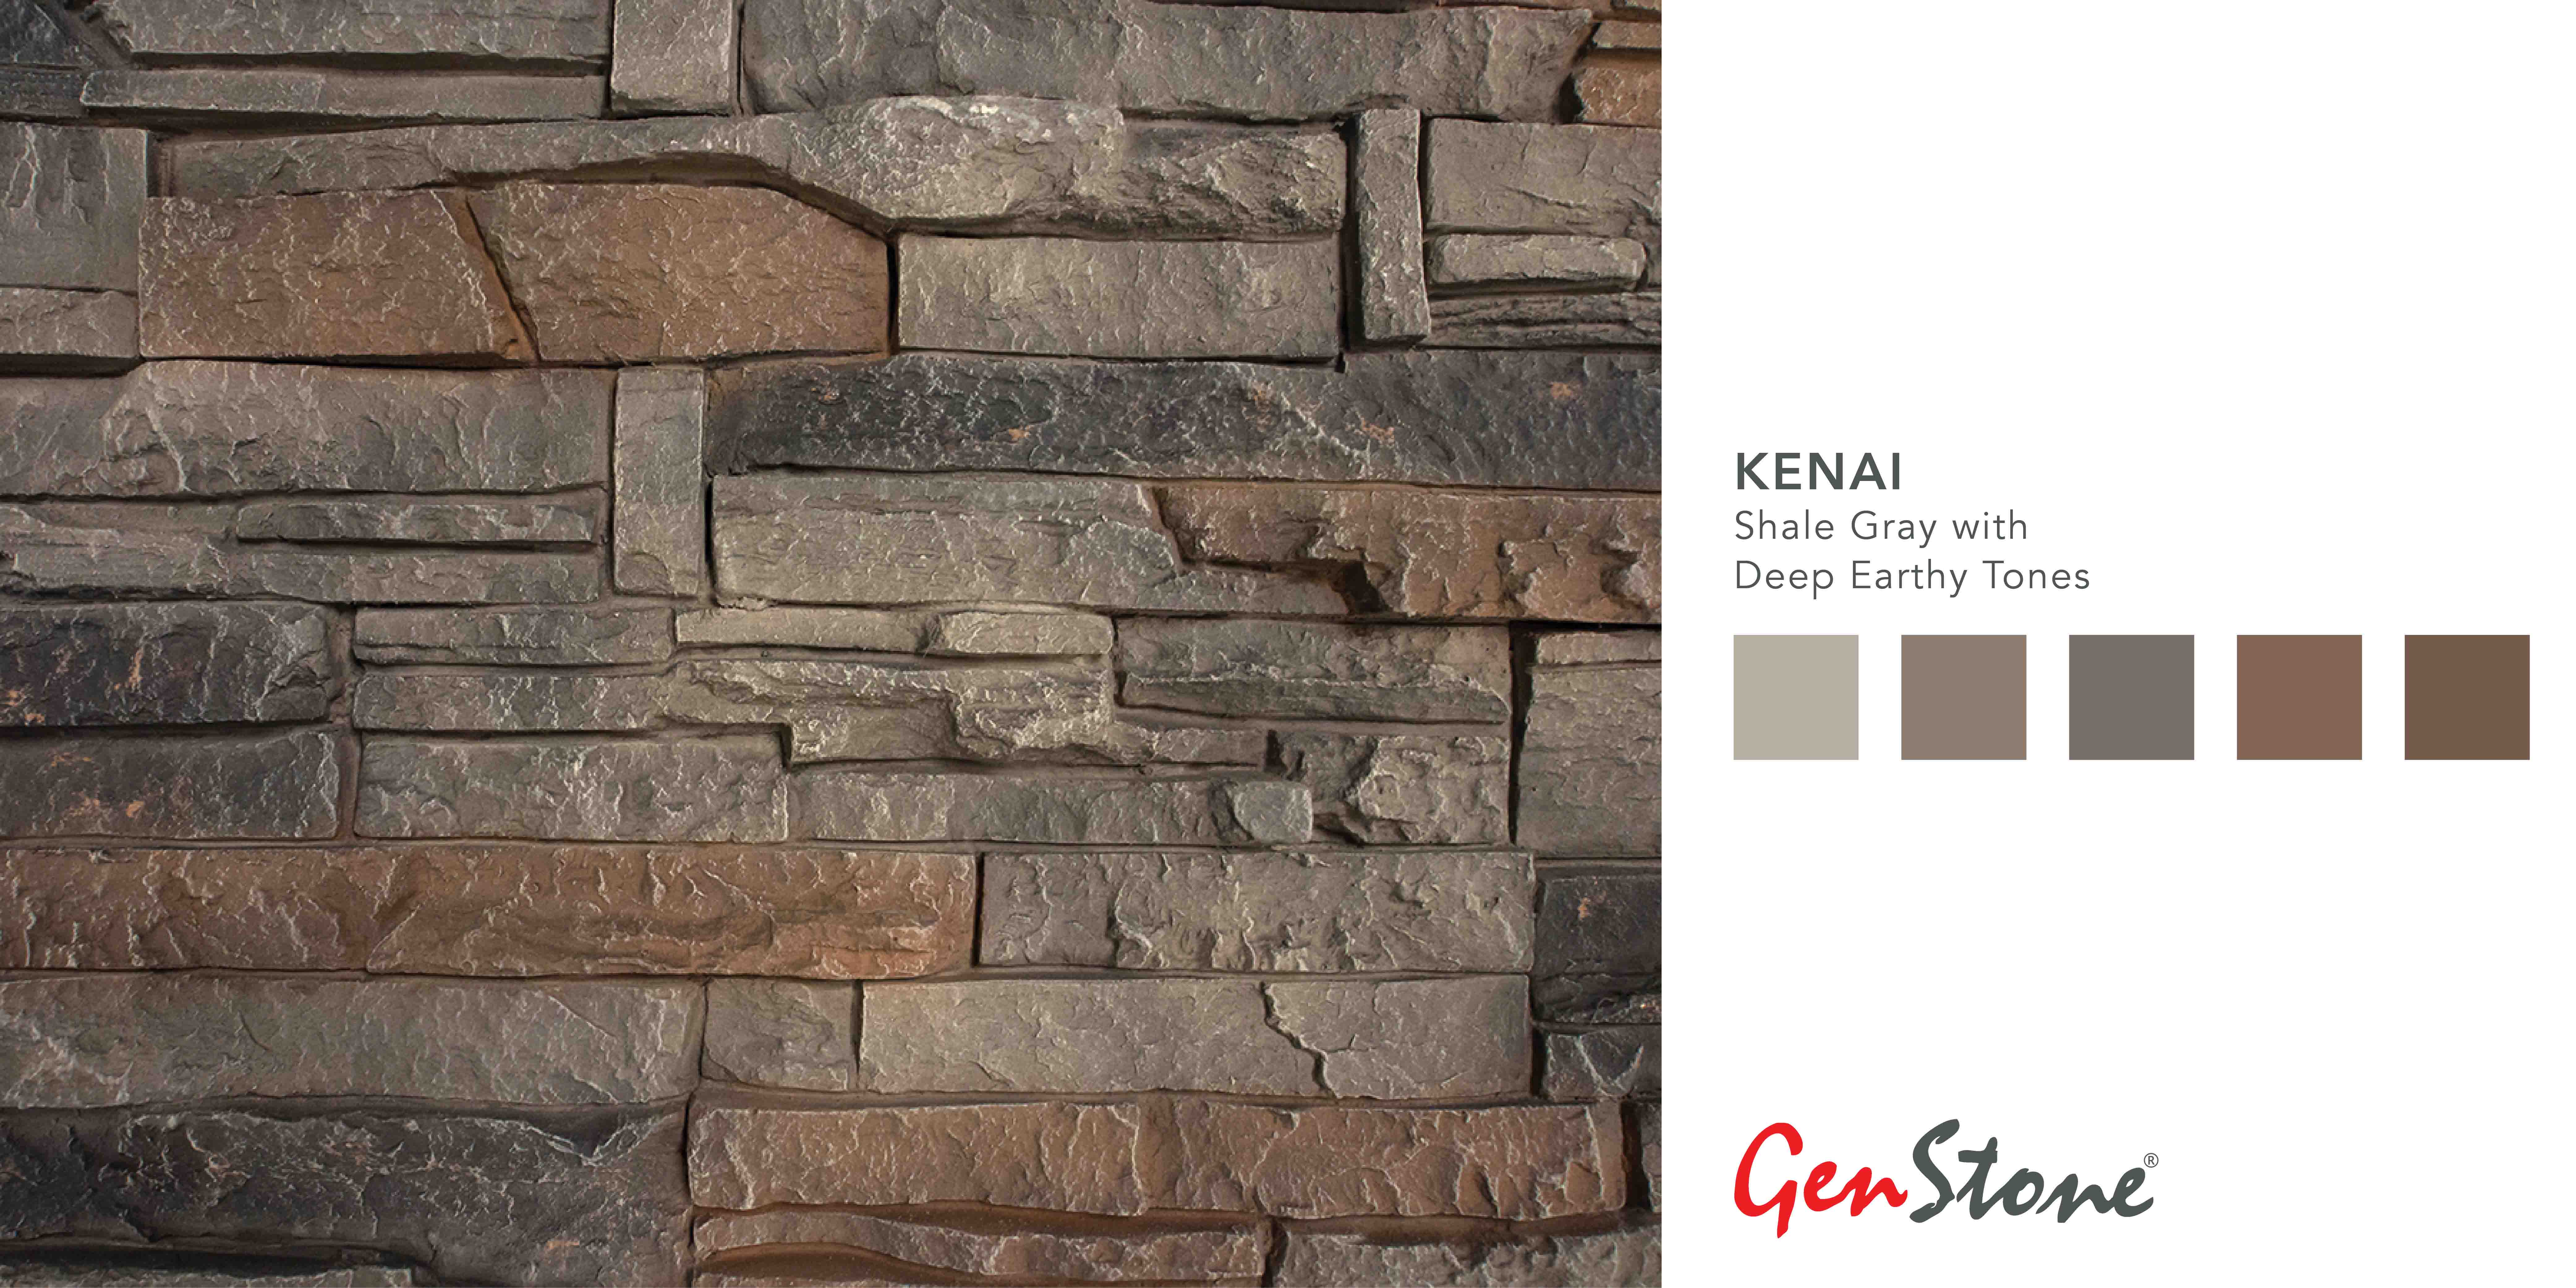 GenStone Kenai Stacked Stone Color Profile